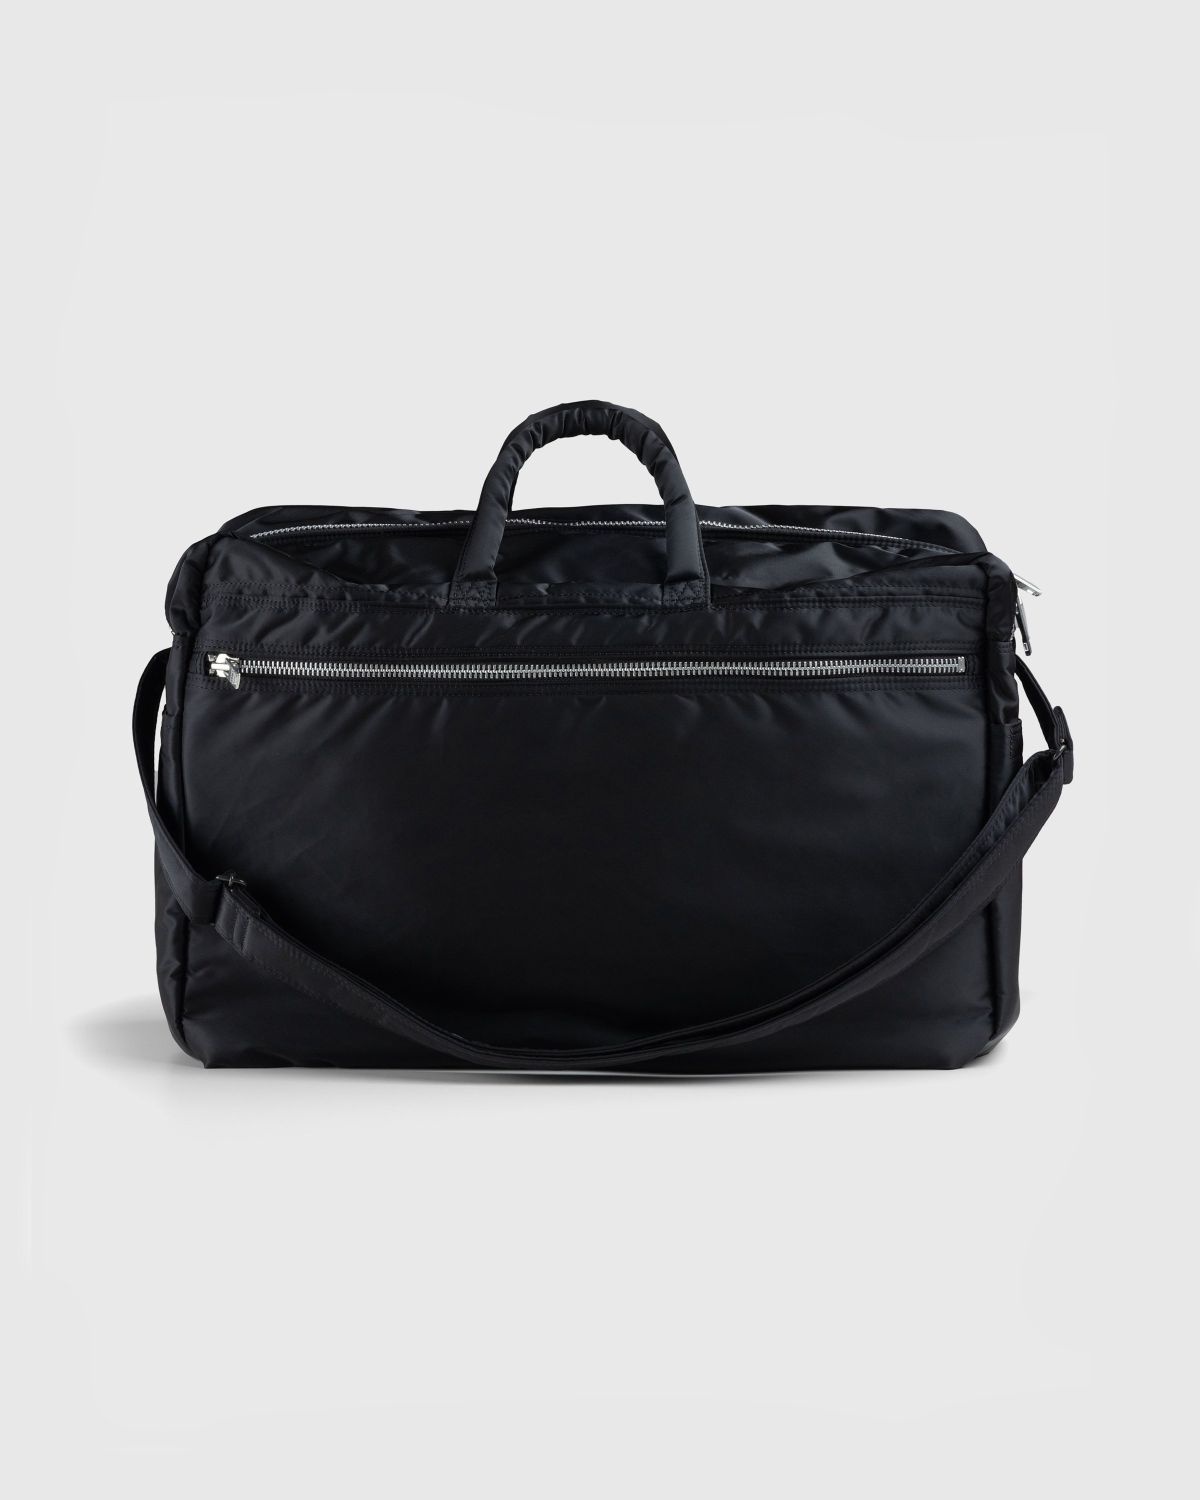 Porter-Yoshida & Co. – Tanker Short Helmet Bag (S) Black